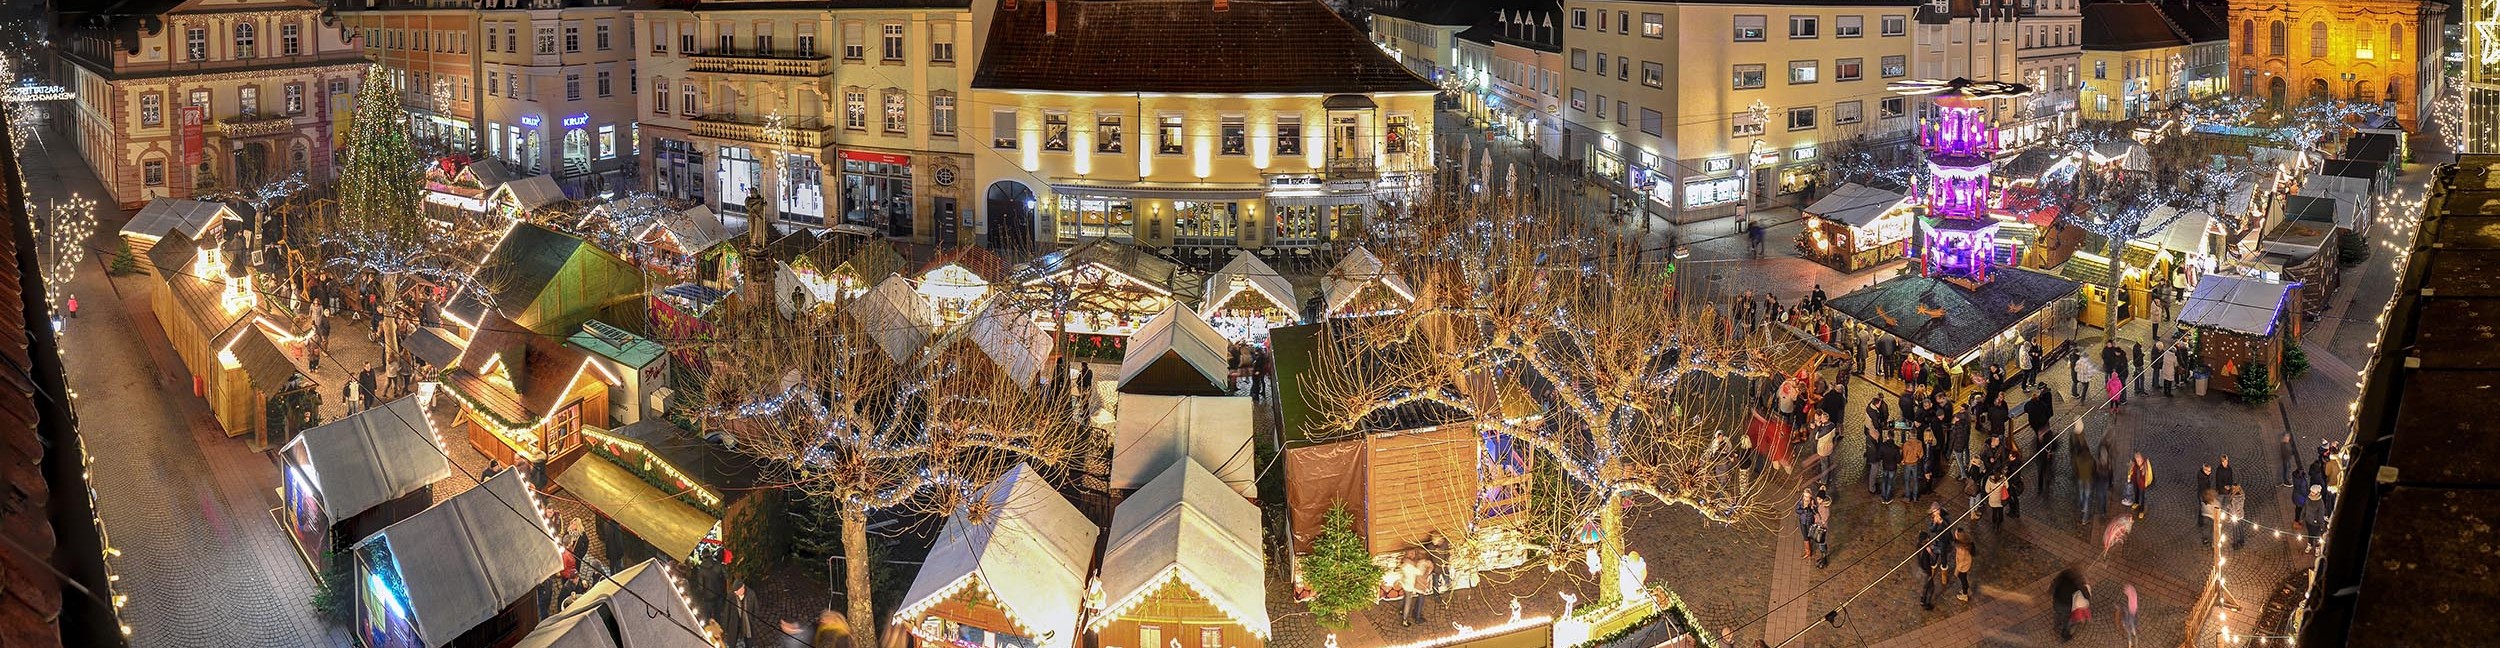 Luftaufnahme Weihnachtsmarkt in Rastatt